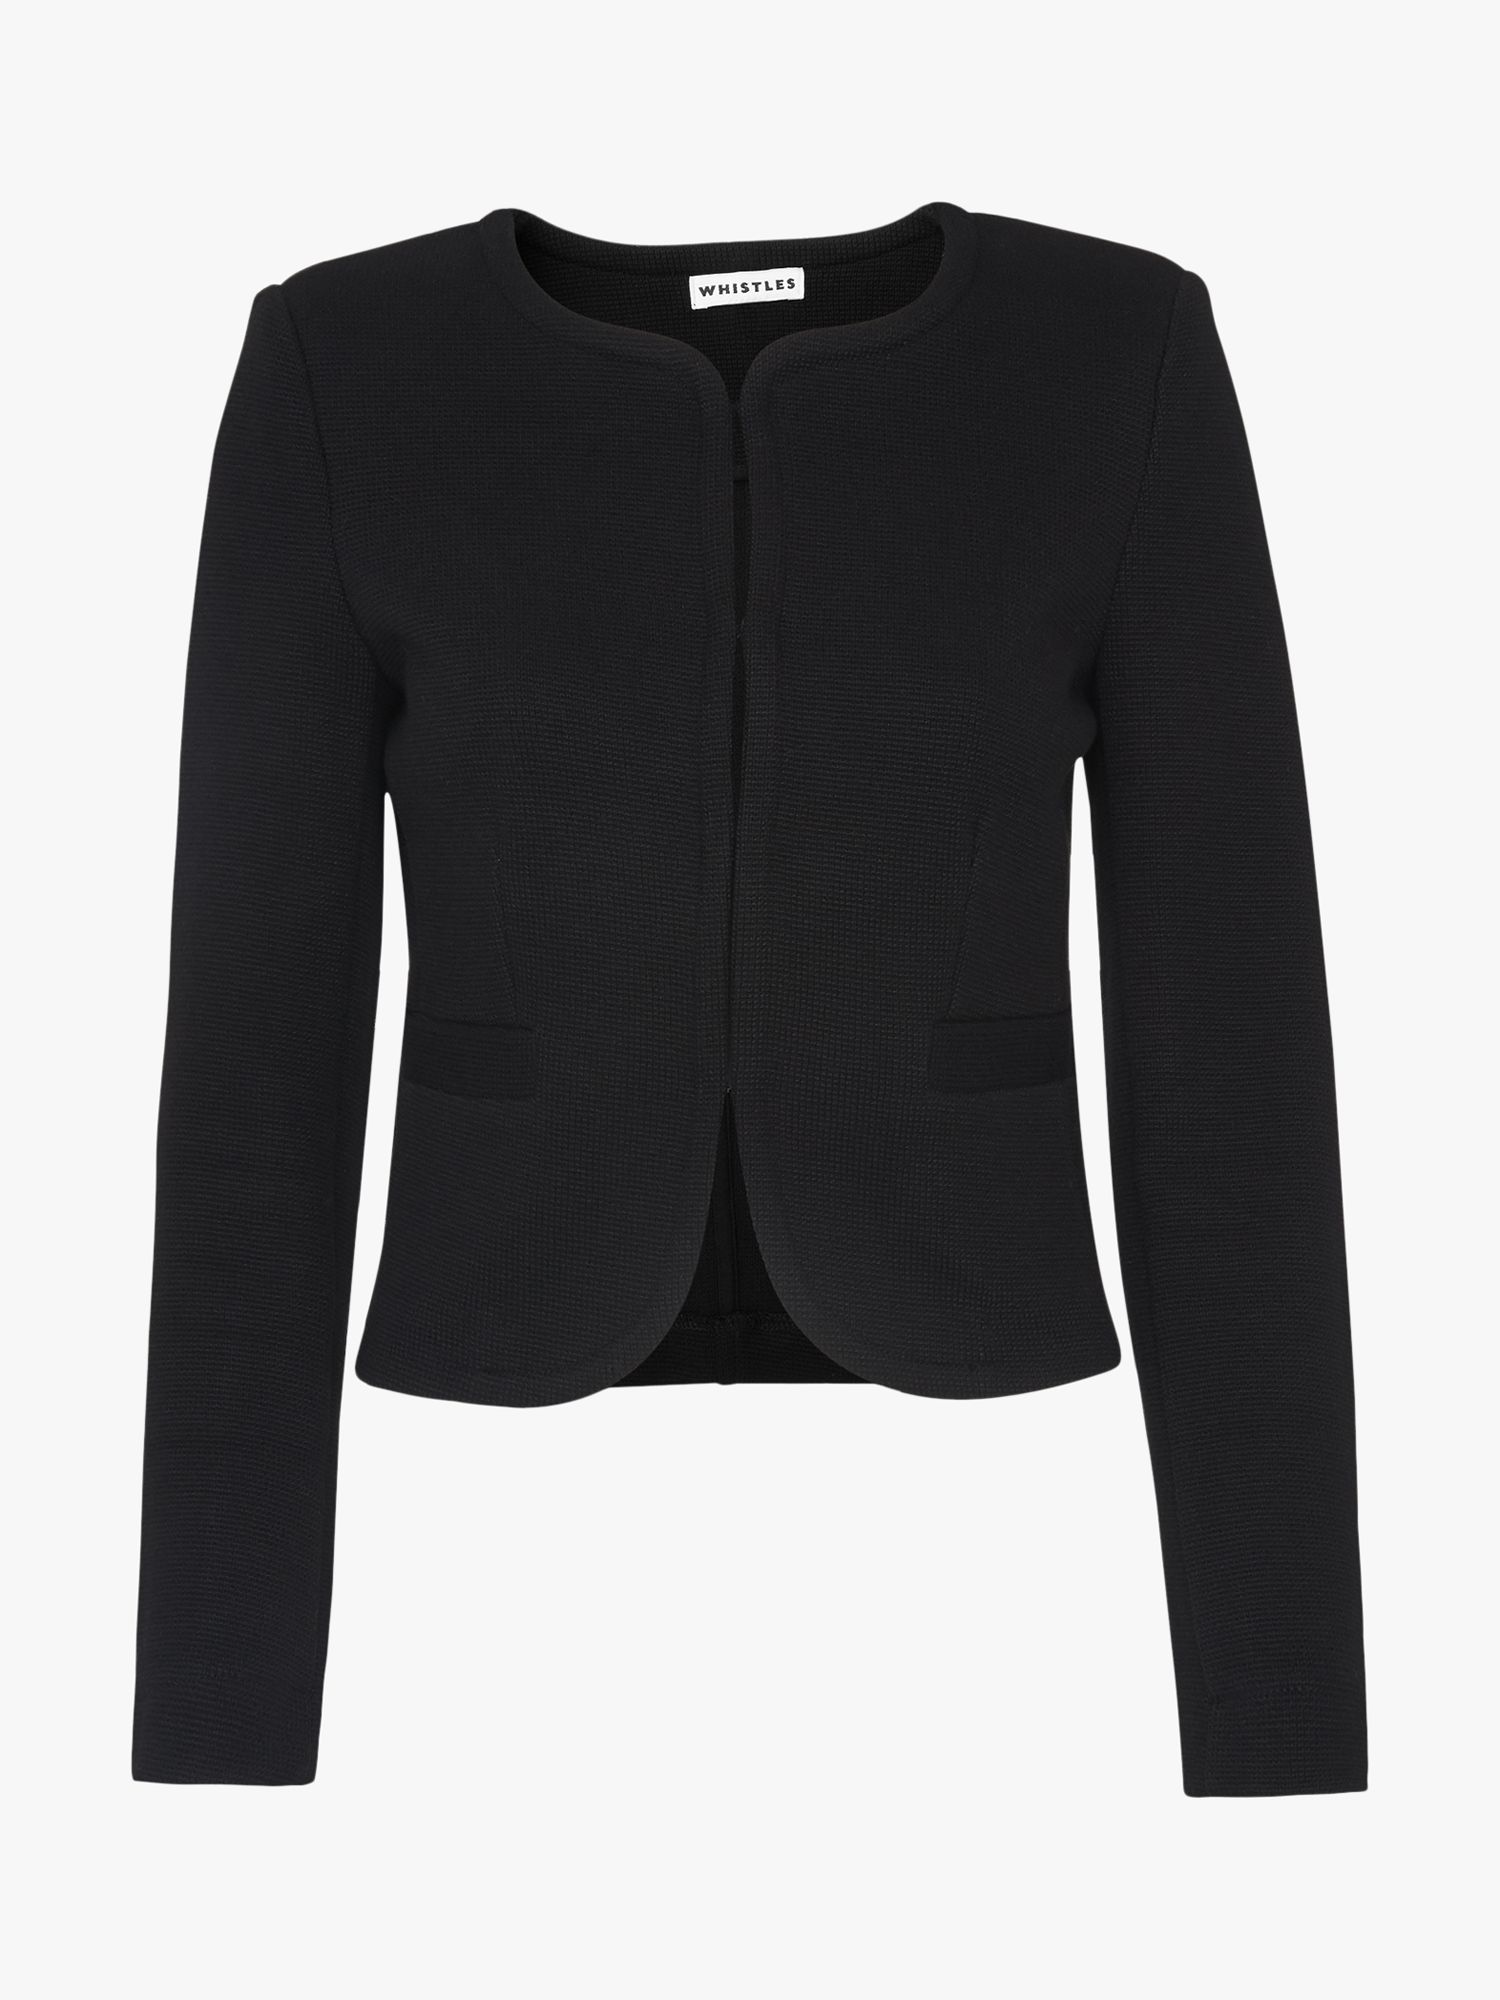 Whistles Collarless Jersey Jacket, Black at John Lewis & Partners